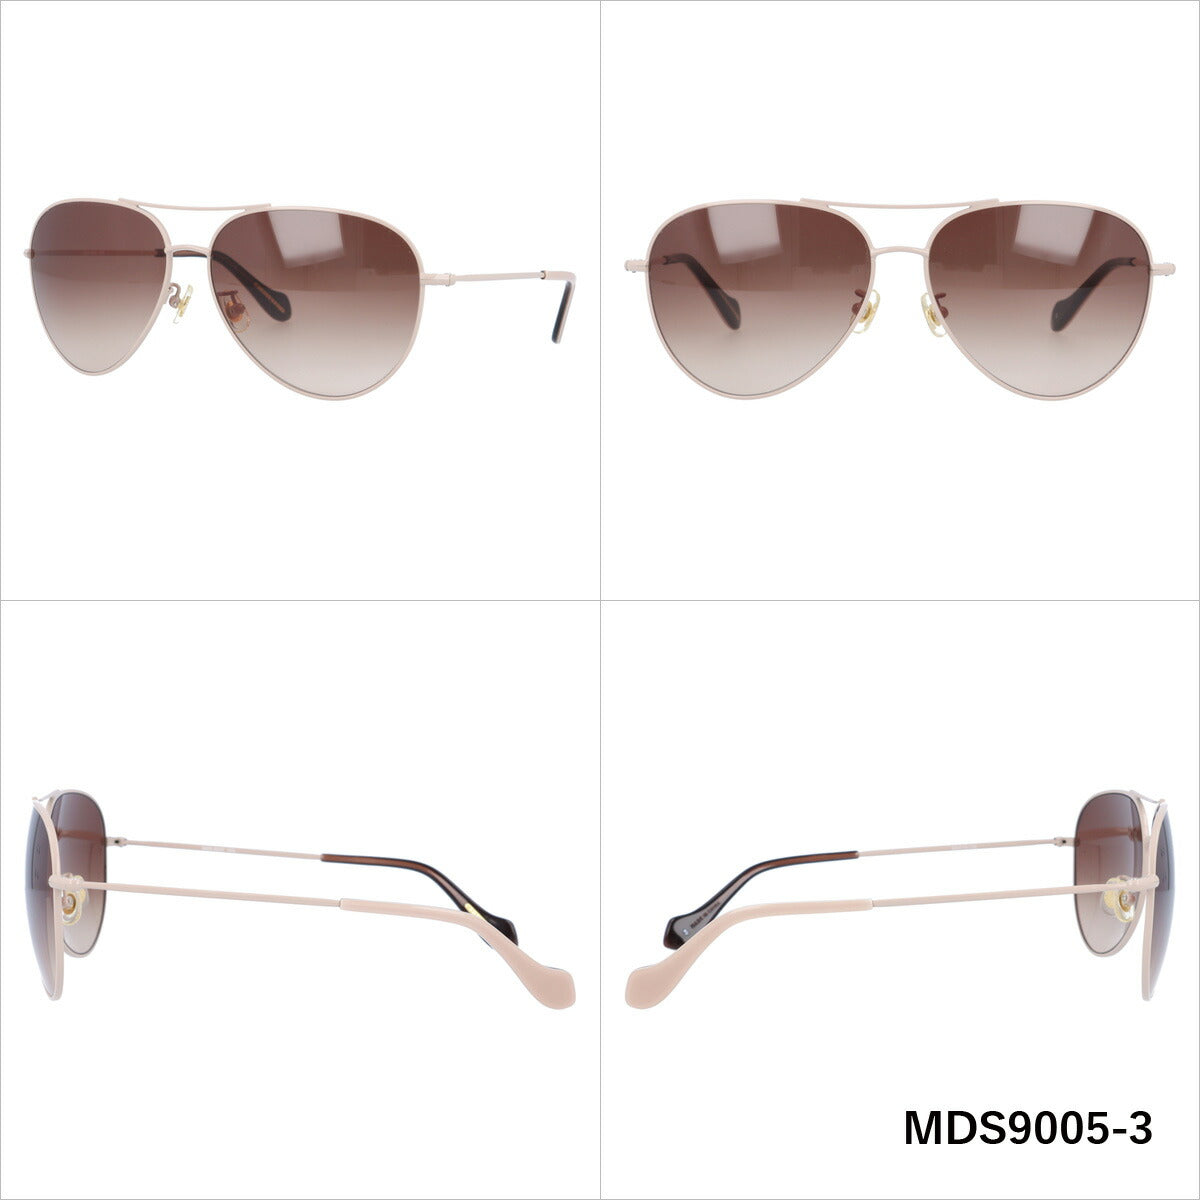 レディース サングラス MERCURYDUO マーキュリーデュオ MDS 9005 全3色 59サイズ アジアンフィット 女性 UVカット 紫外線 対策 ブランド 眼鏡 メガネ アイウェア 人気 おすすめ ラッピング無料